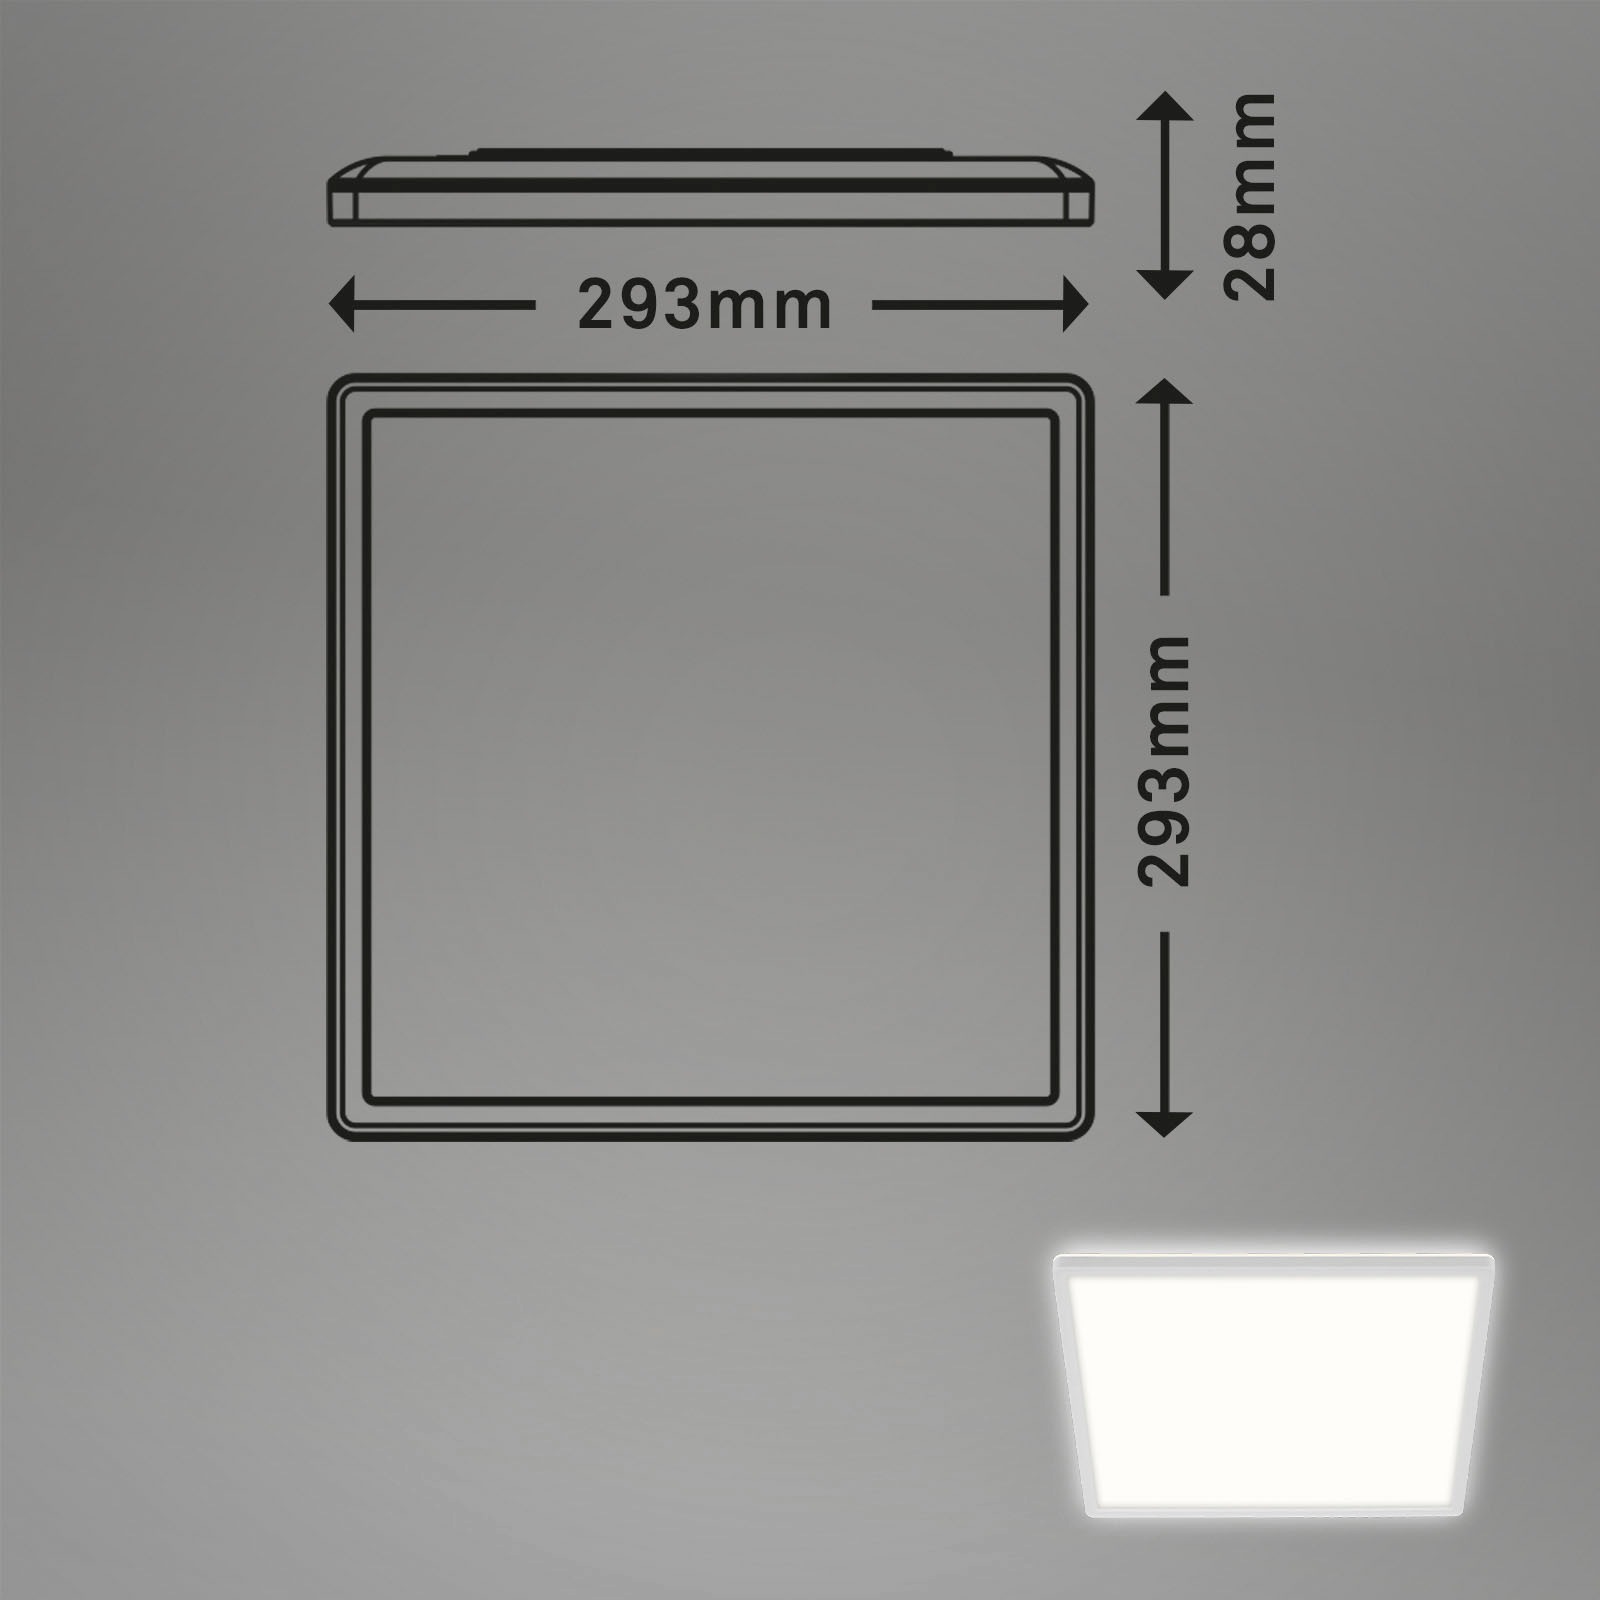 Briloner Leuchten LED Panel »7156416 SLIM«, Deckenlampe, 29,3x29,3x2,8cm, Weiß, 18W, Wohnzimmer, Schlafzimmer